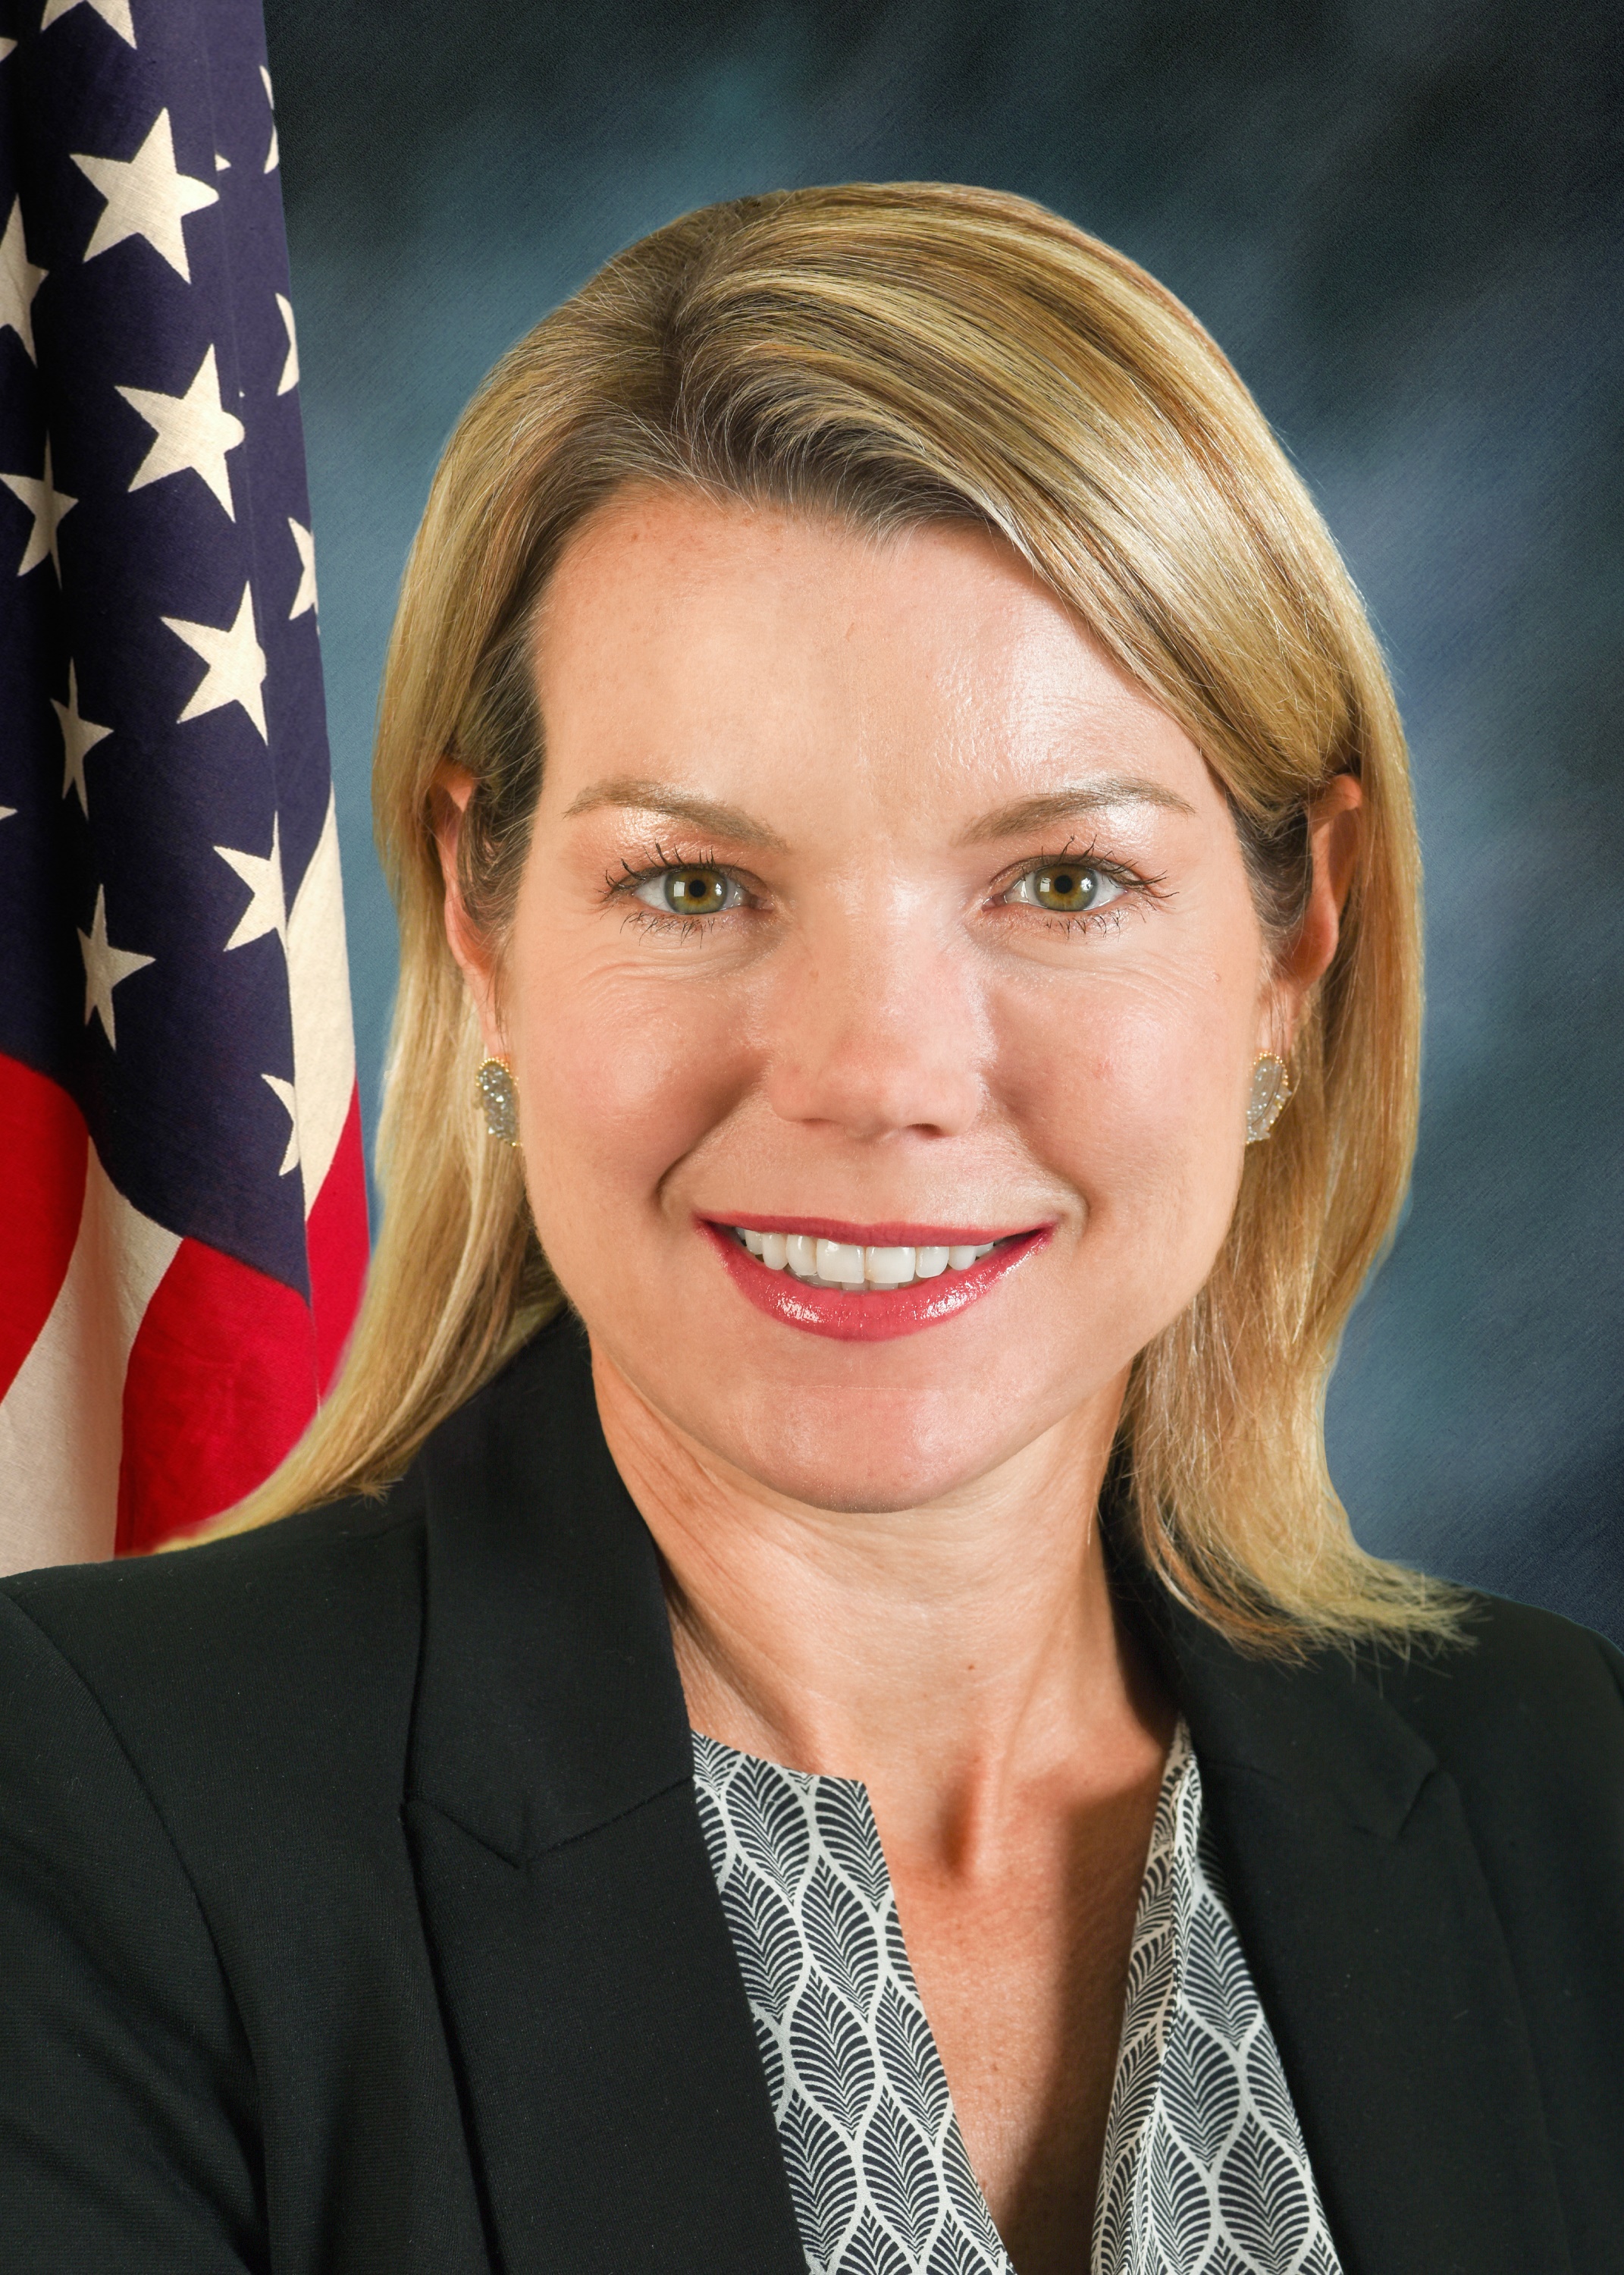  senator Erica Harriss